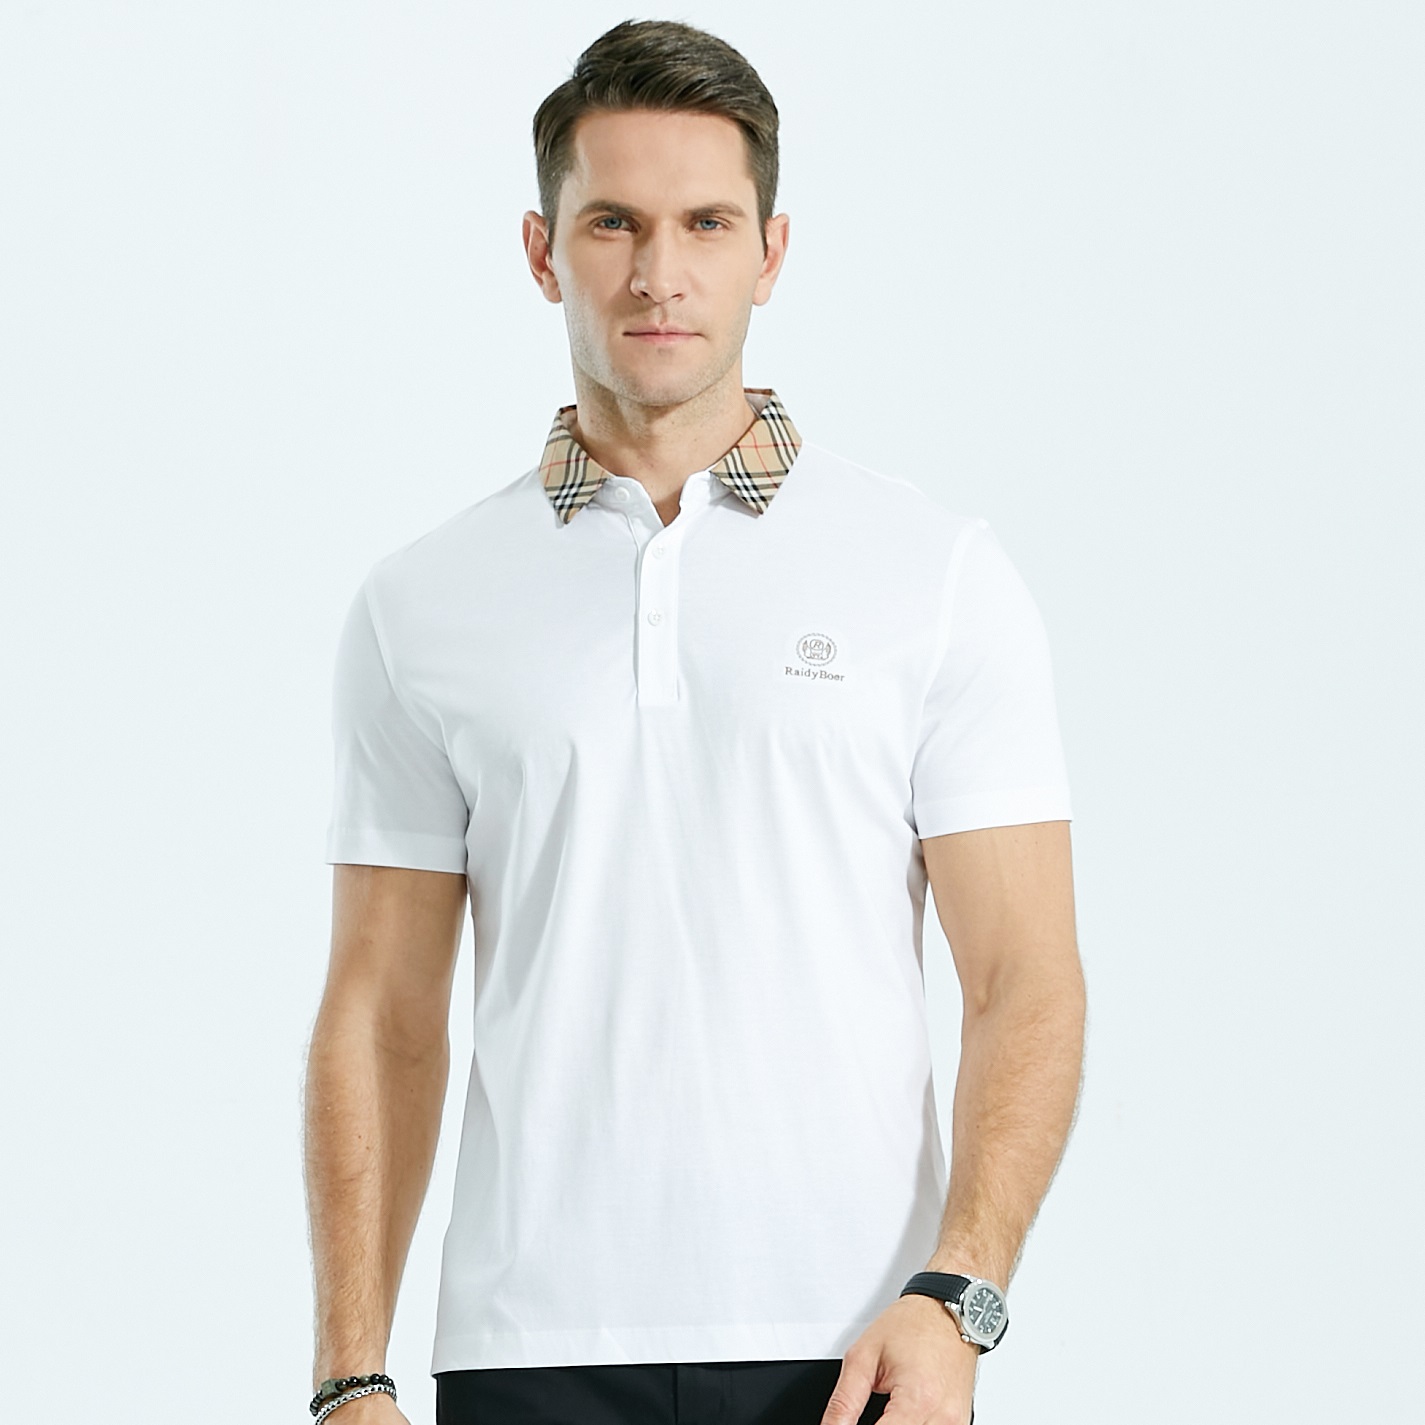 Fabrycznie tanie puste koszulki polo Niestandardowa koszulka polo do golfa dla mężczyzn